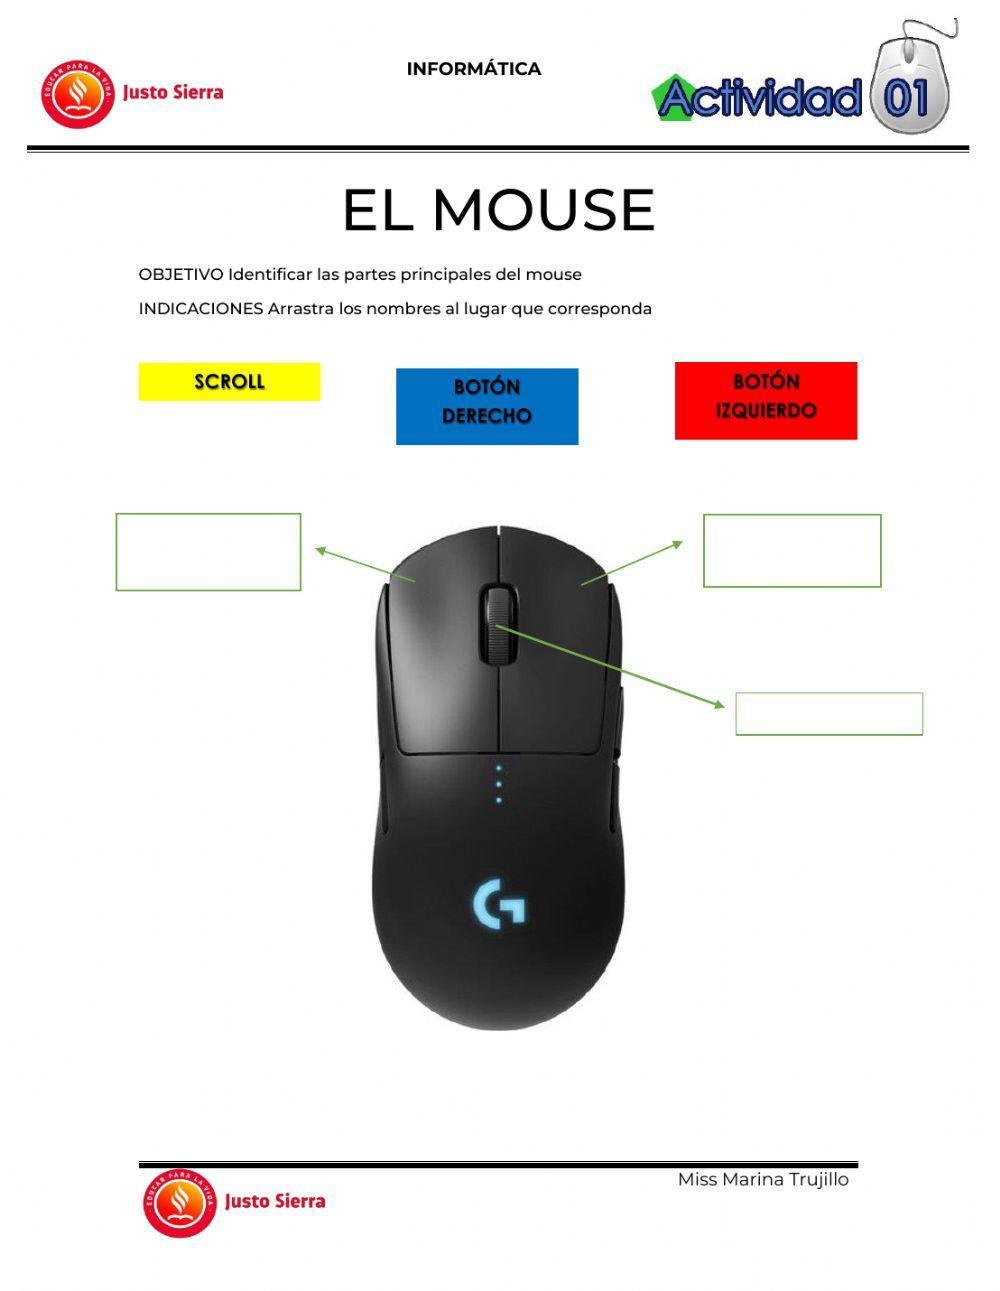 Las partes del mouse